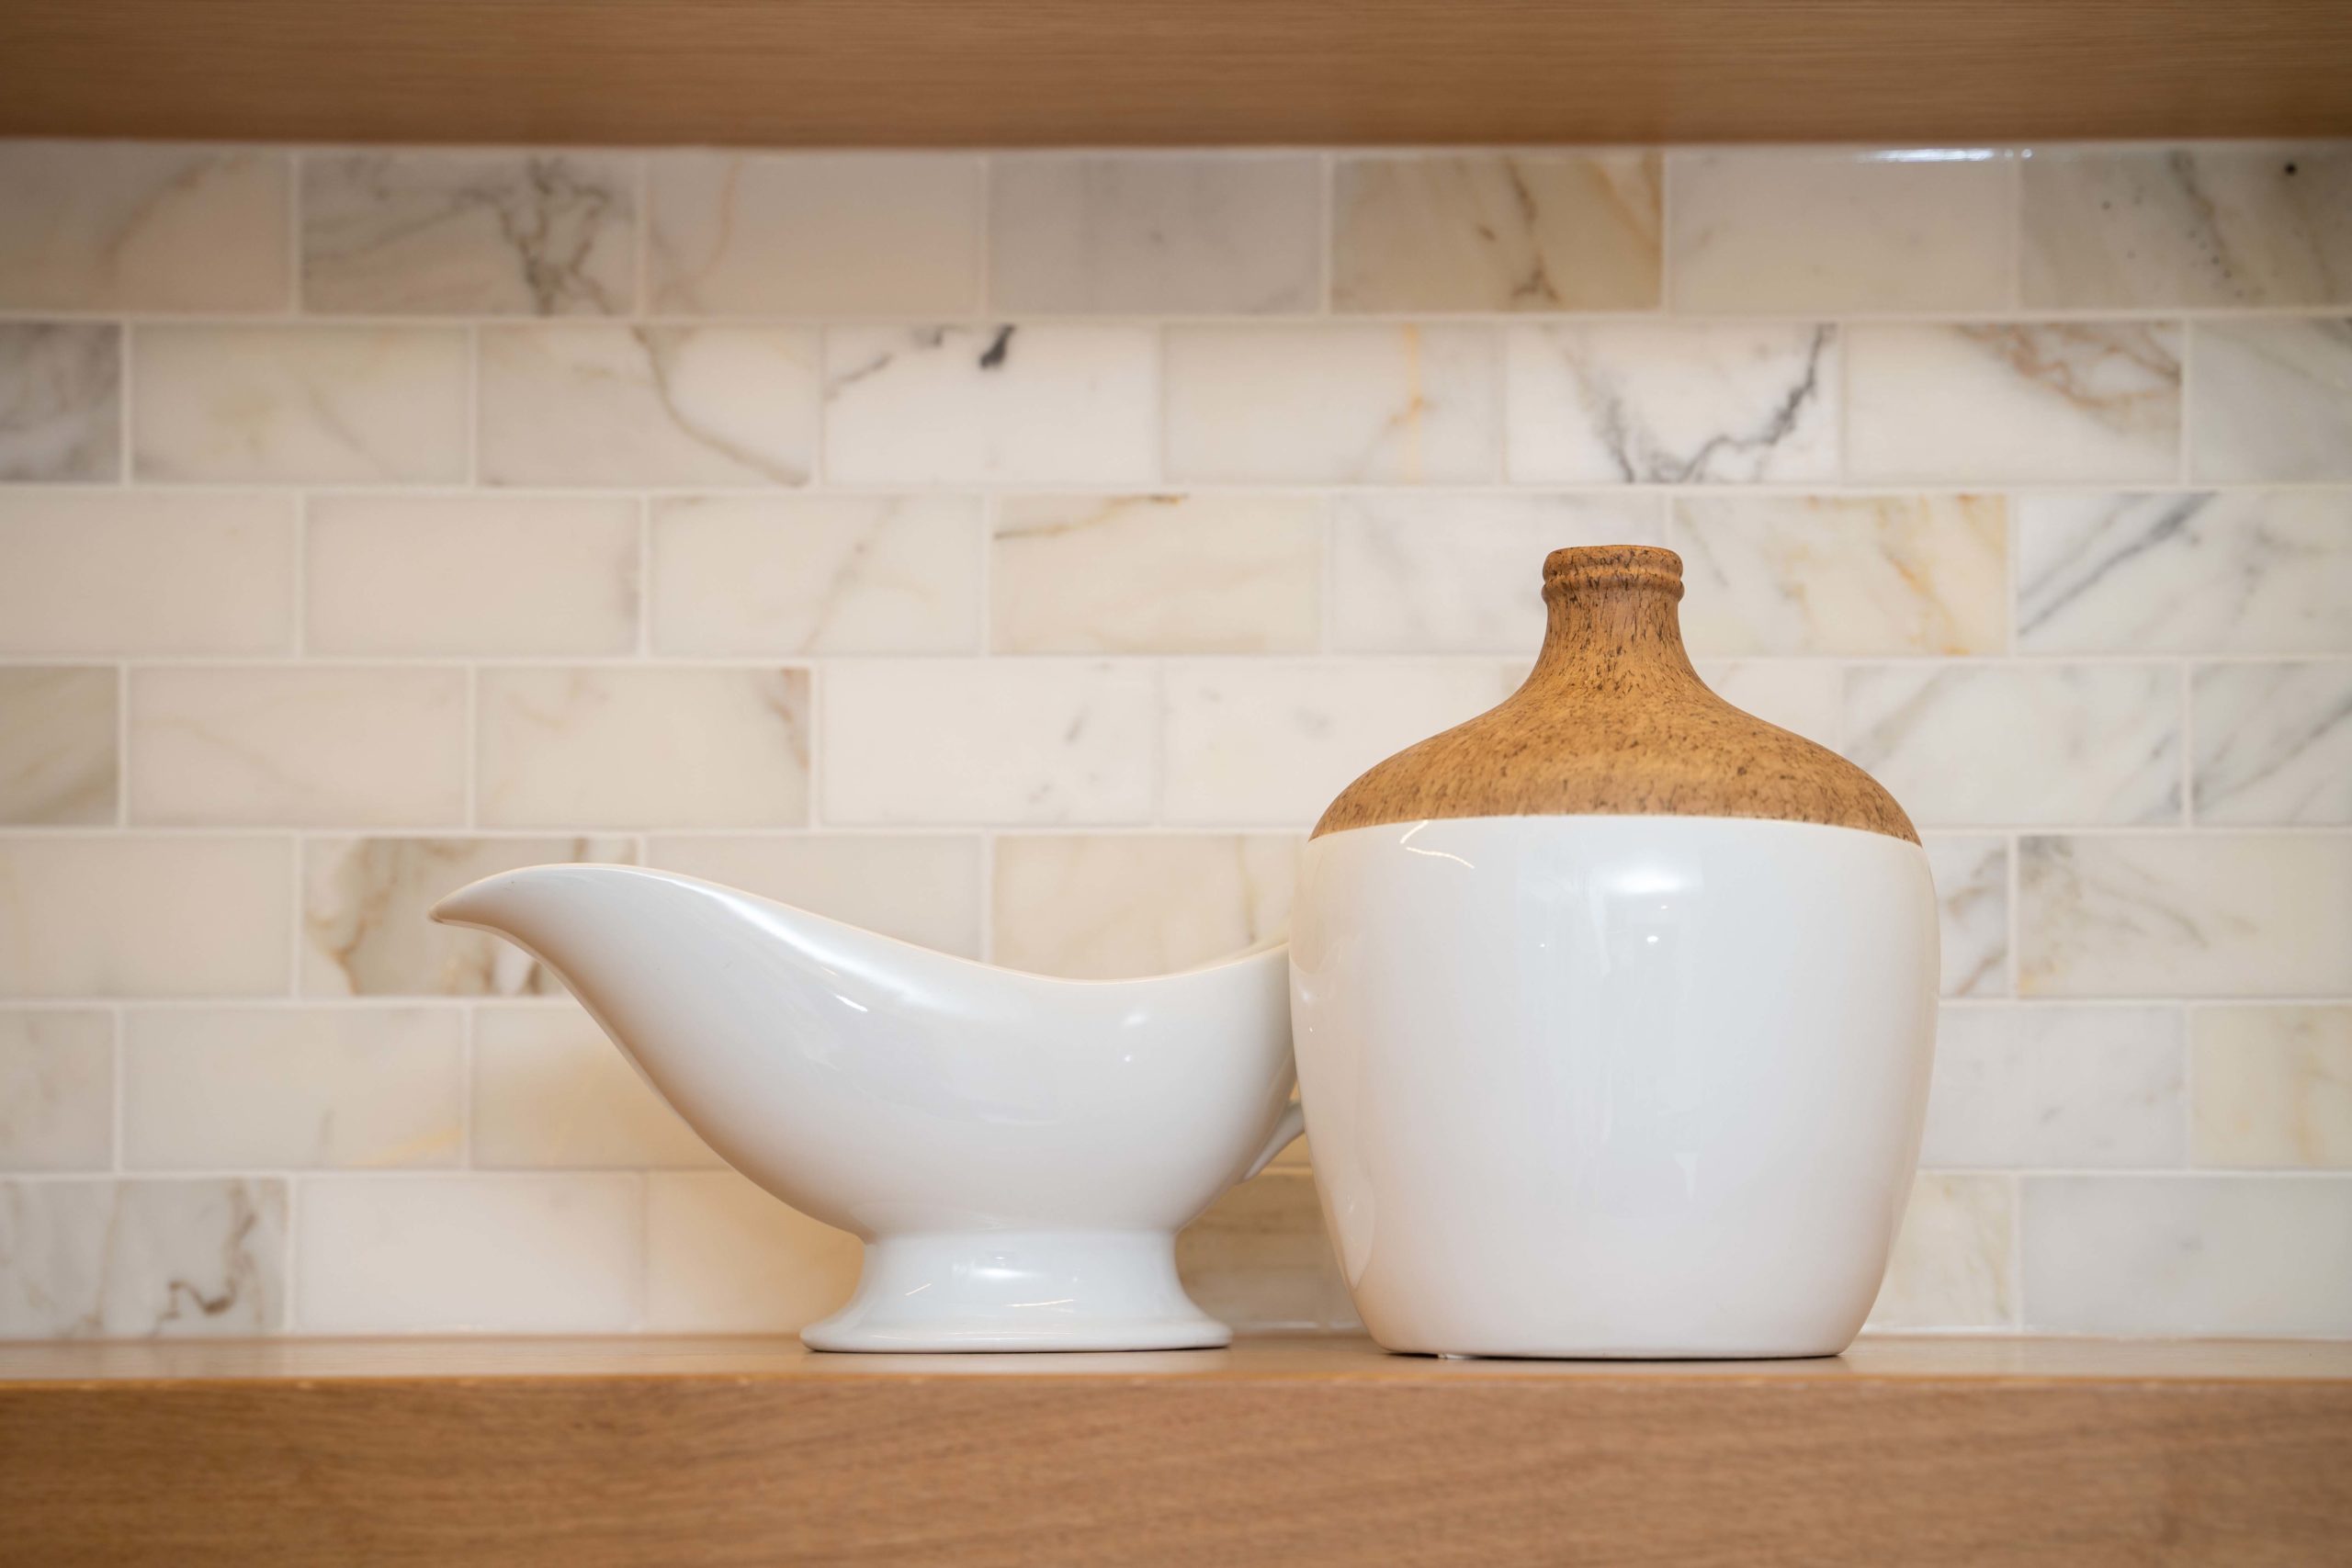 White gravy bowl and vase on wood shelf in kitchen.